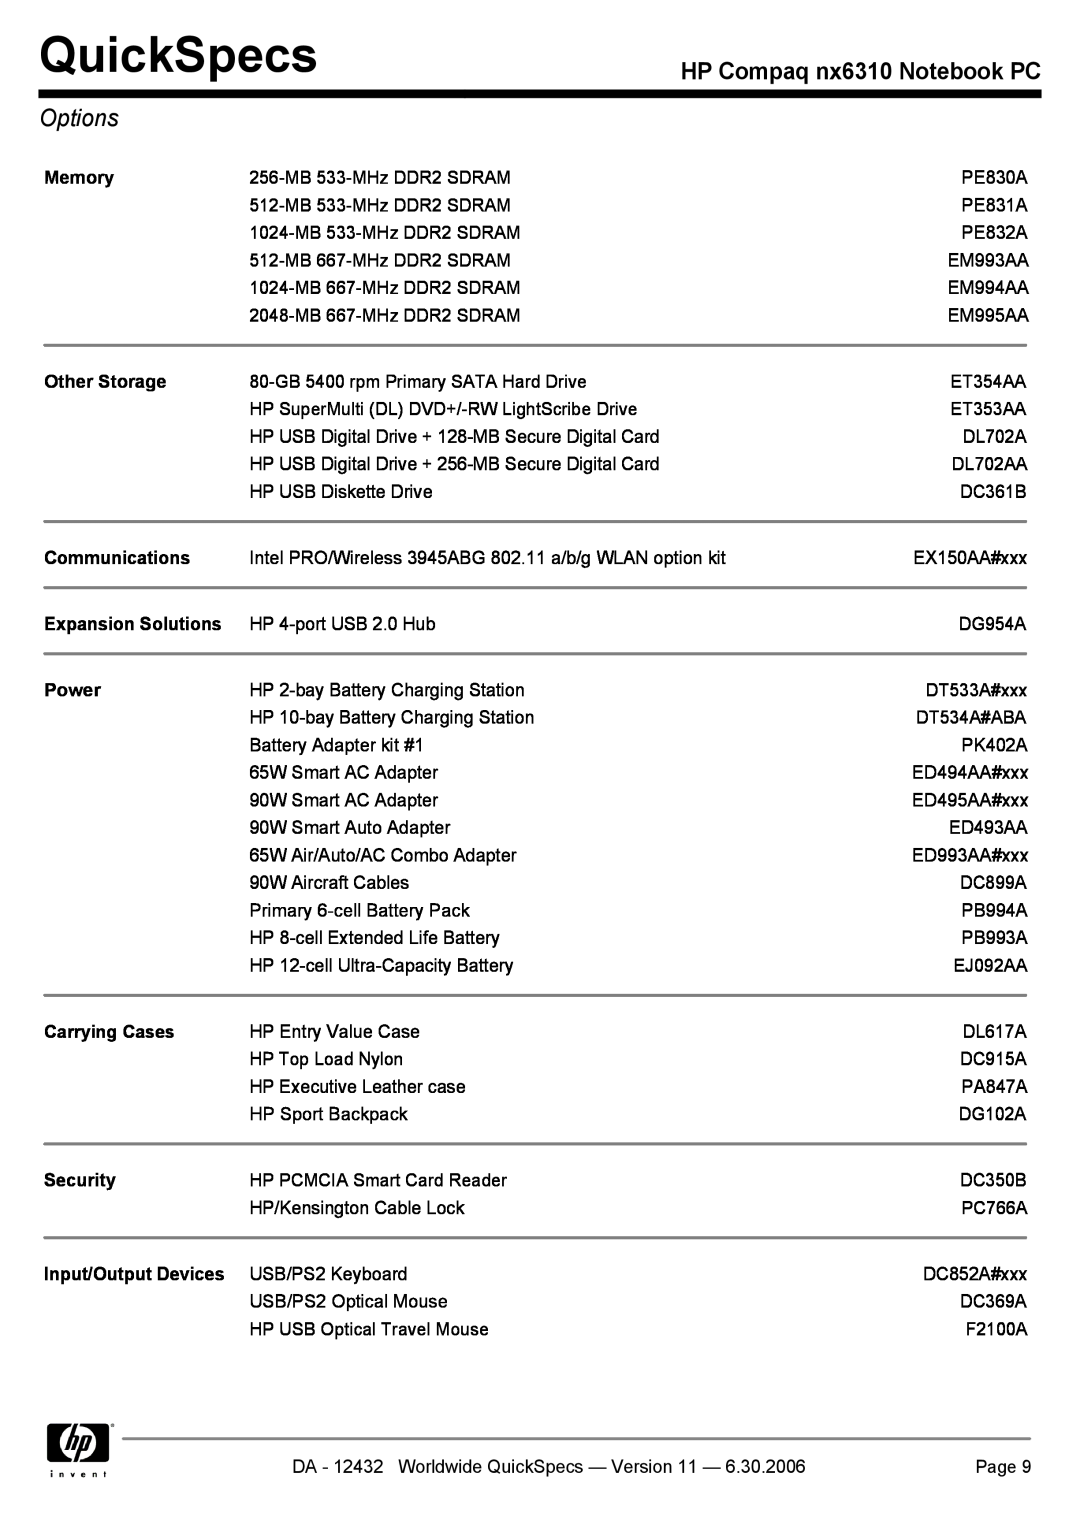 Compaq NX6310 manual Options, QuickSpecs, HP Compaq nx6310 Notebook PC 